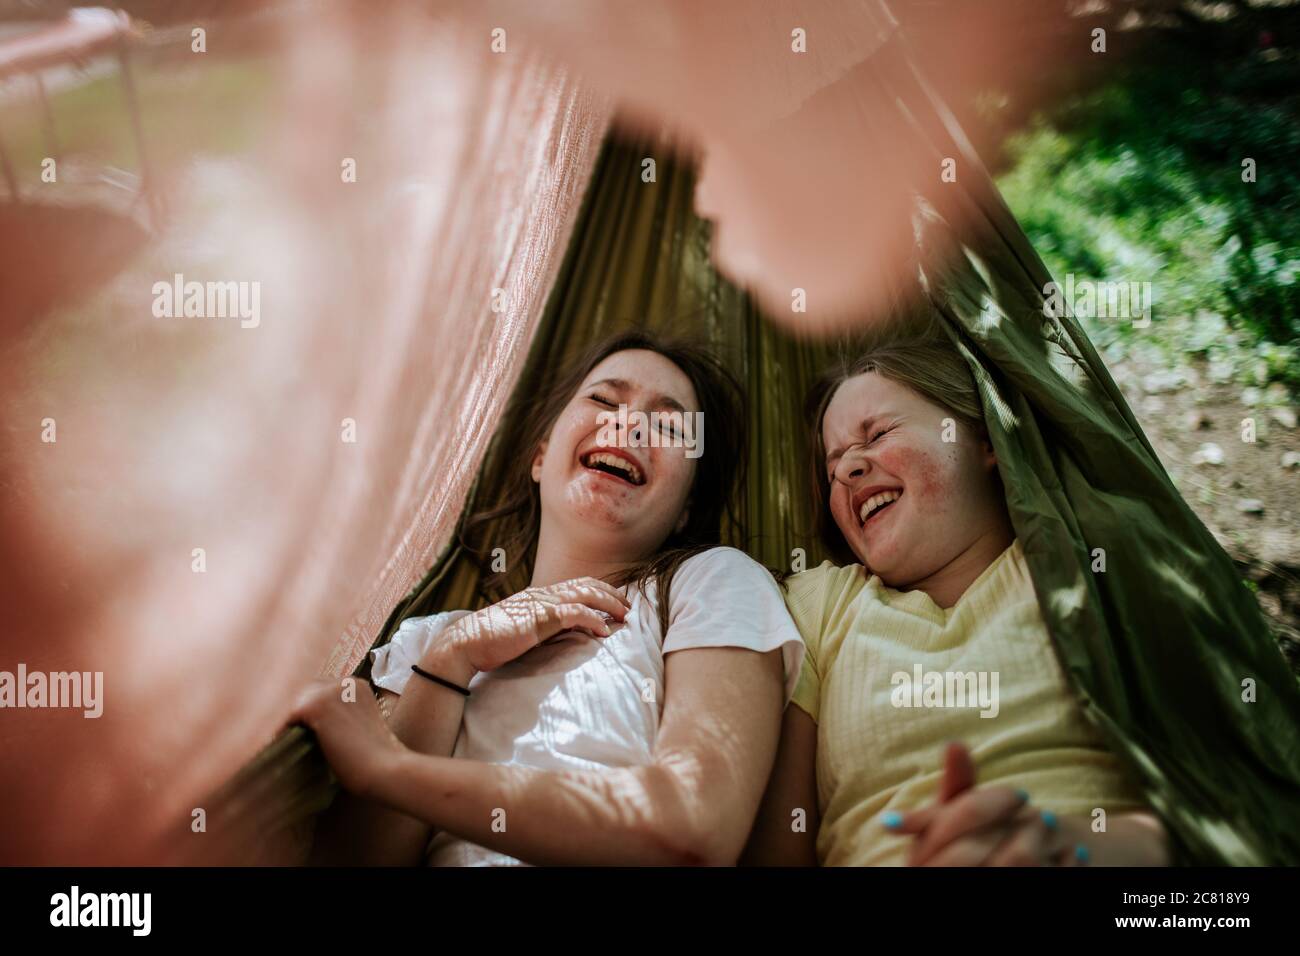 Les jeunes filles rient et rigolent dans un hamac Banque D'Images